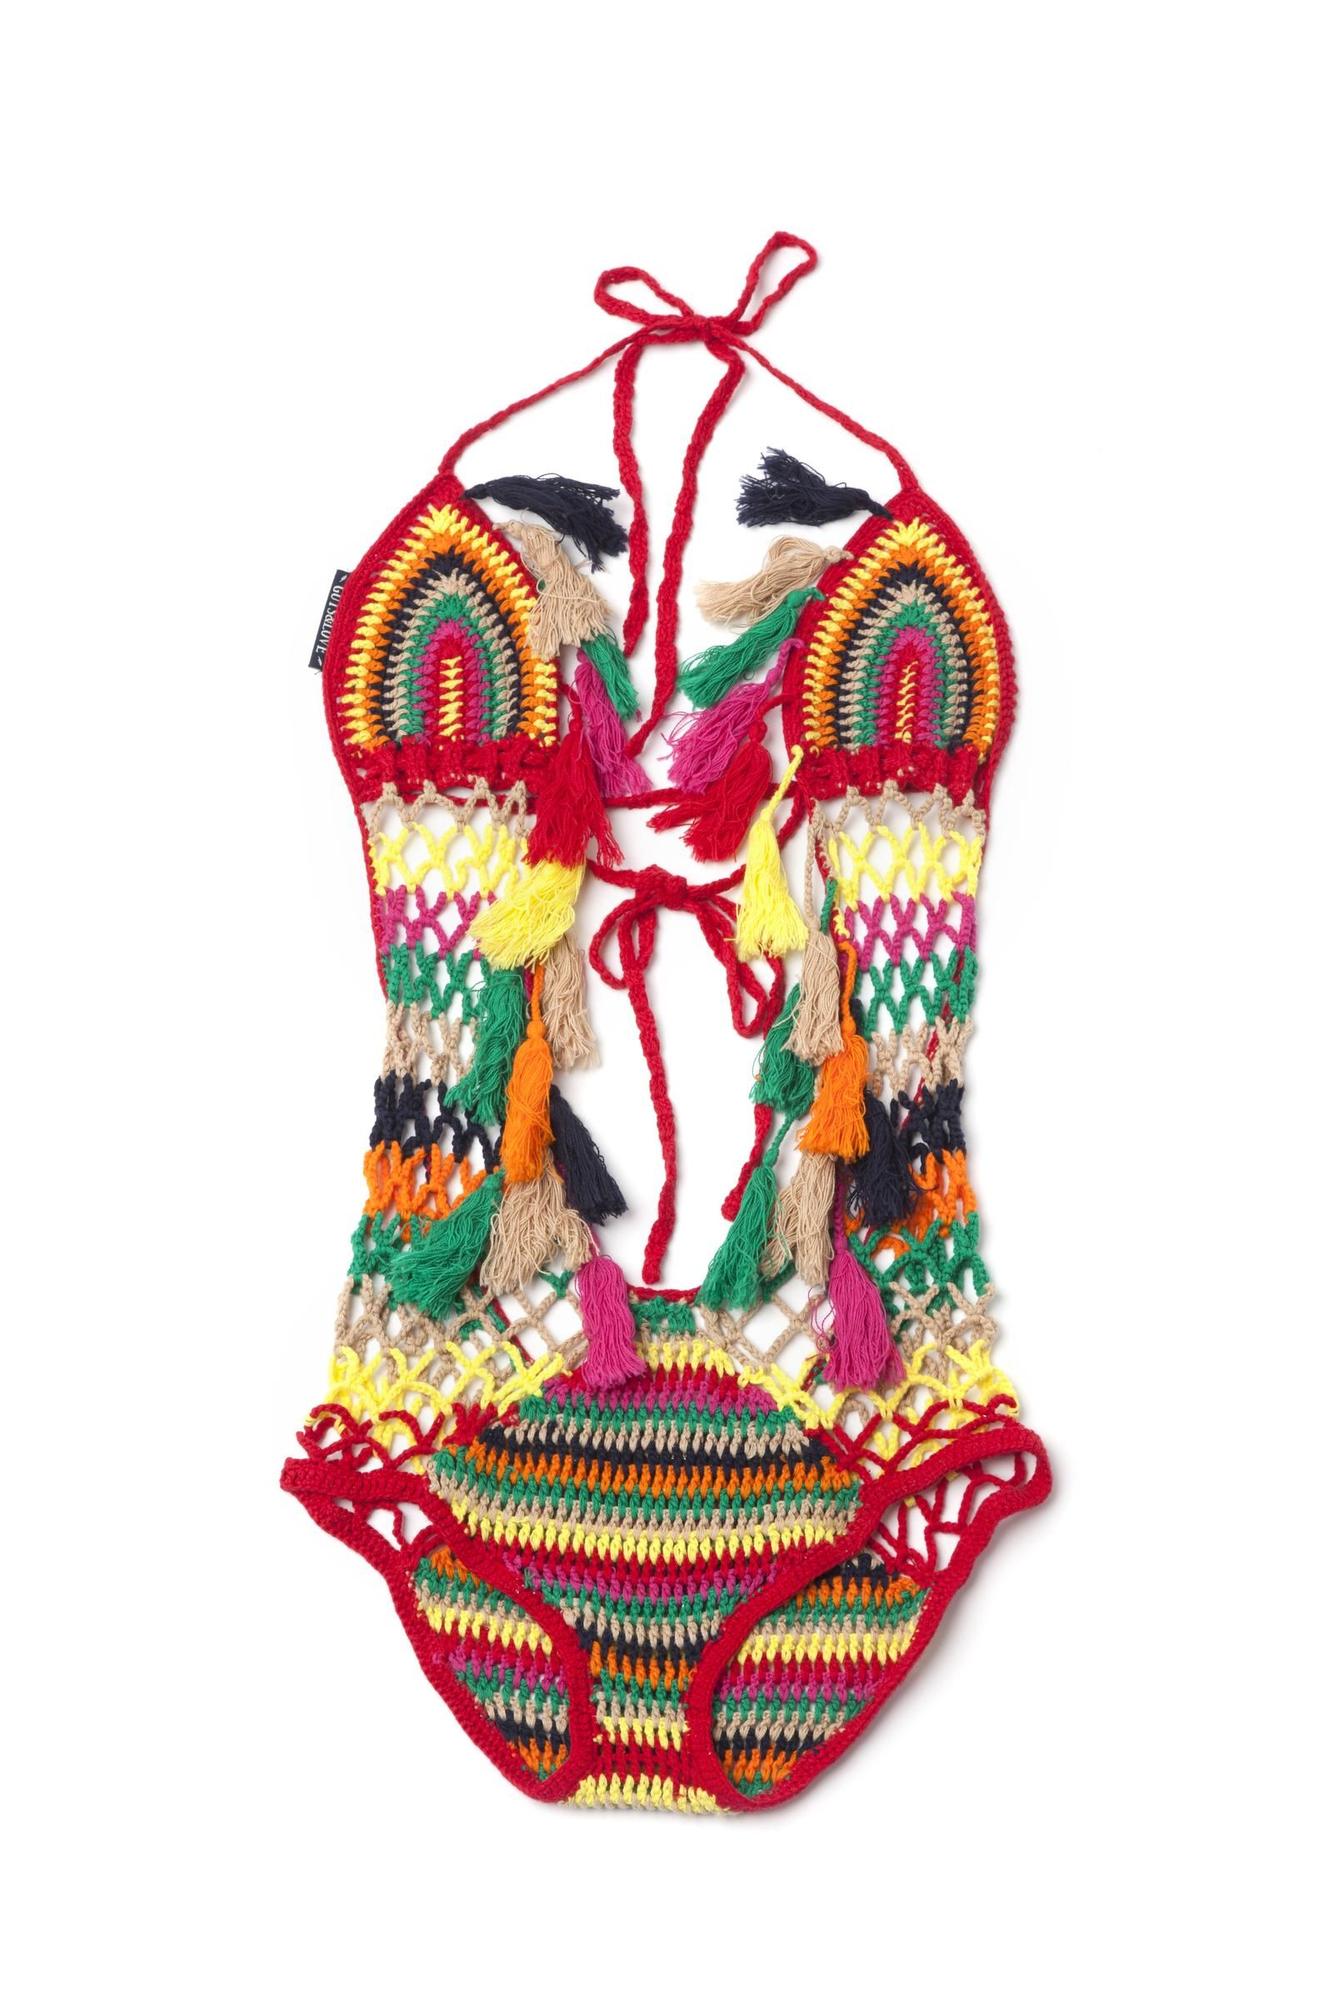 Bañadores para regalar el Día de la Madre: trikini de crochet multicolor